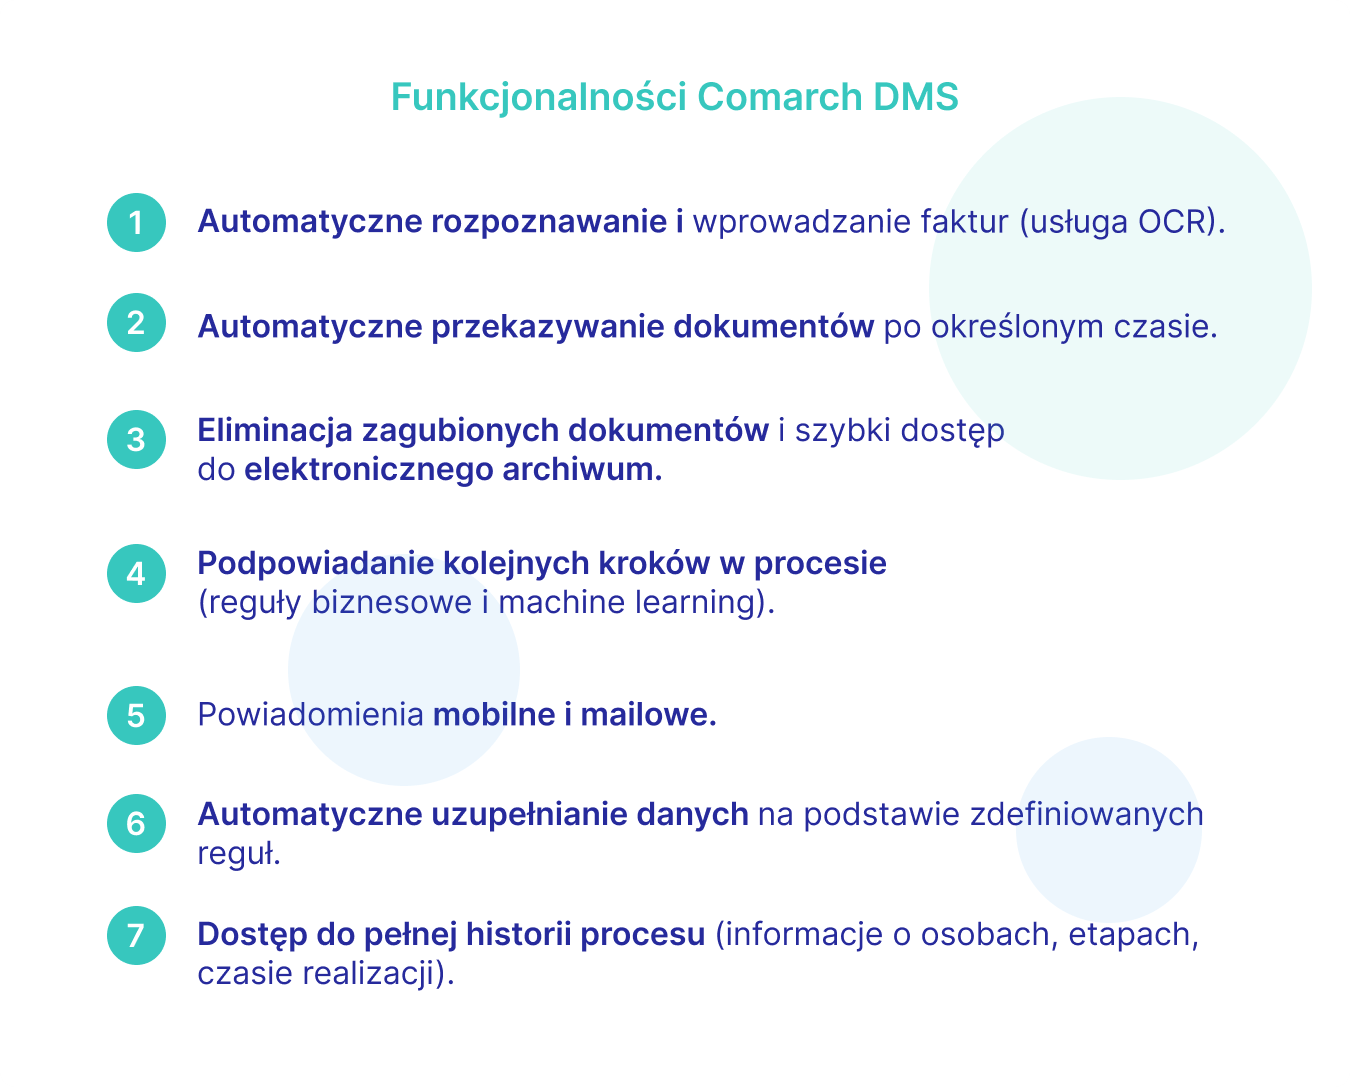 Funkcjonalności aplikacji Comarch DMS